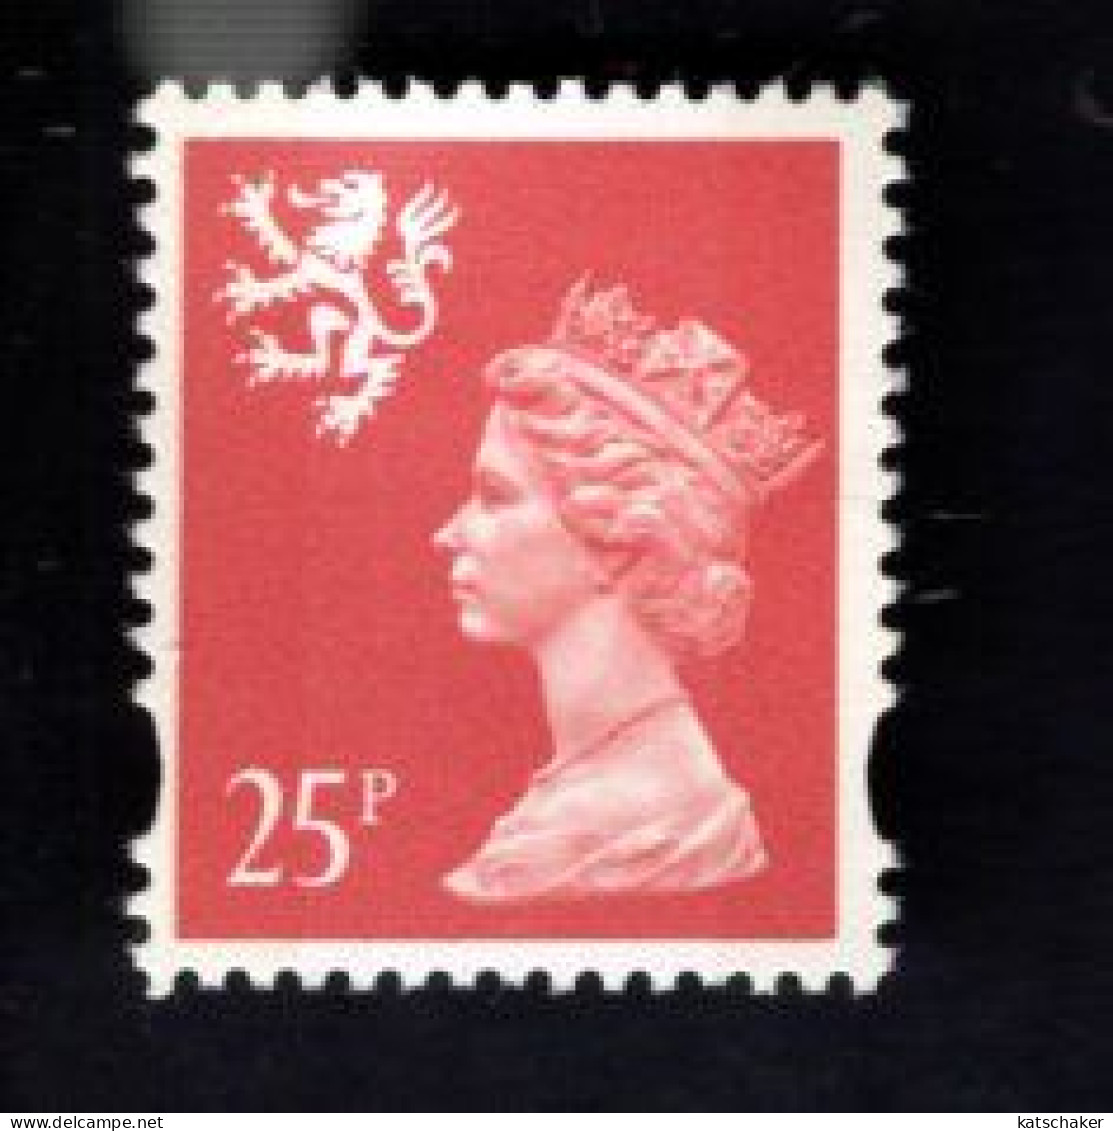 1787054533 1996  SCOTT SMH65  GIBBONS S84 (XX) POSTFRIS MINT NEVER HINGED   - QUEEN ELIZABETH II - - Schotland